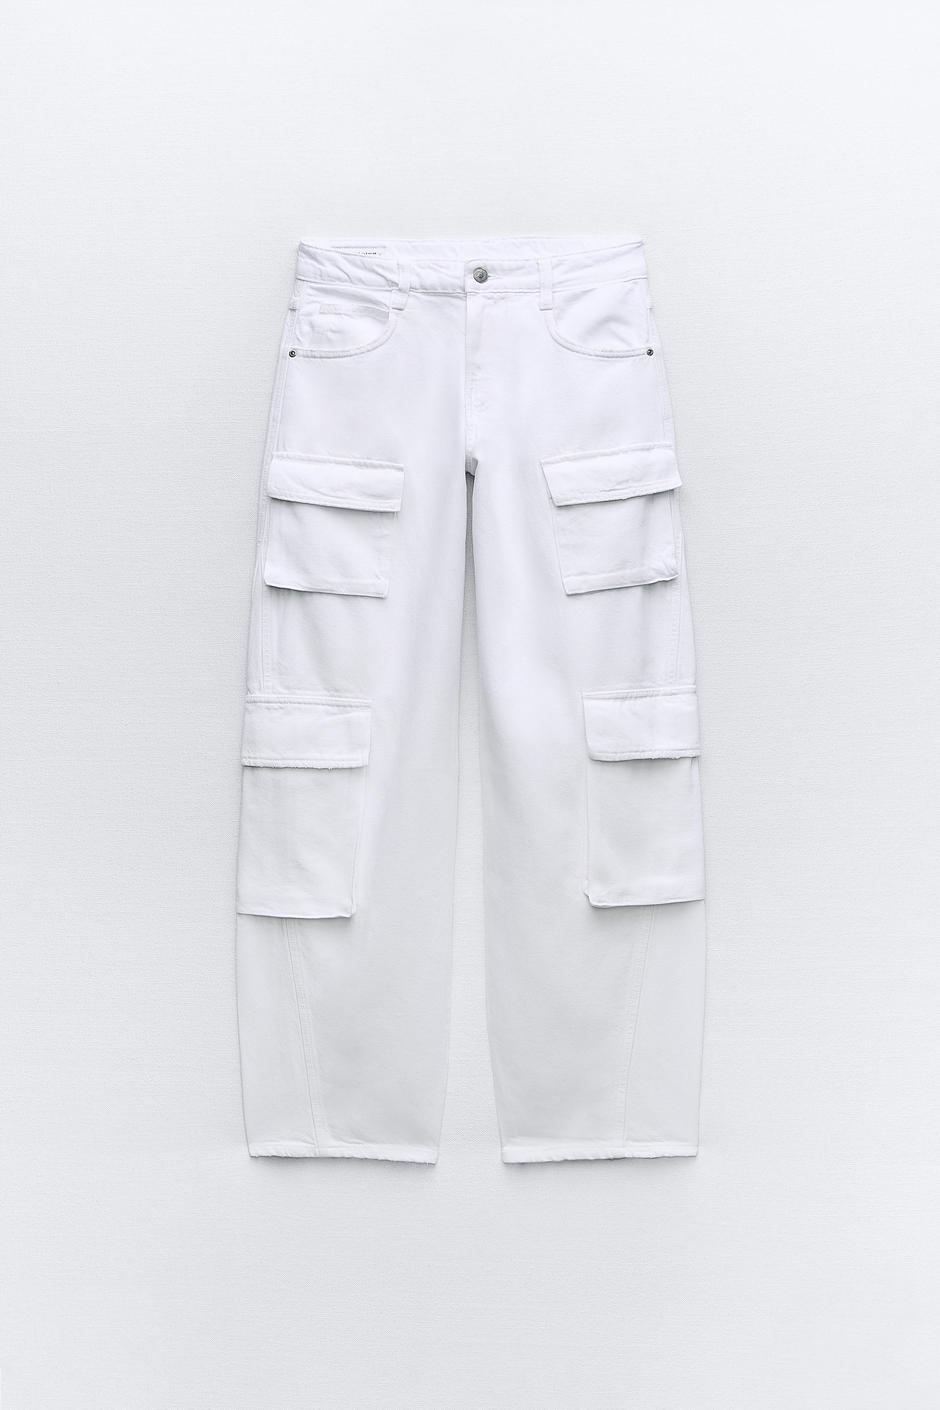 Foto: Zara, bijele hlače (prije 39,95 eura - sada 19,99 eura) | Autor: Zara